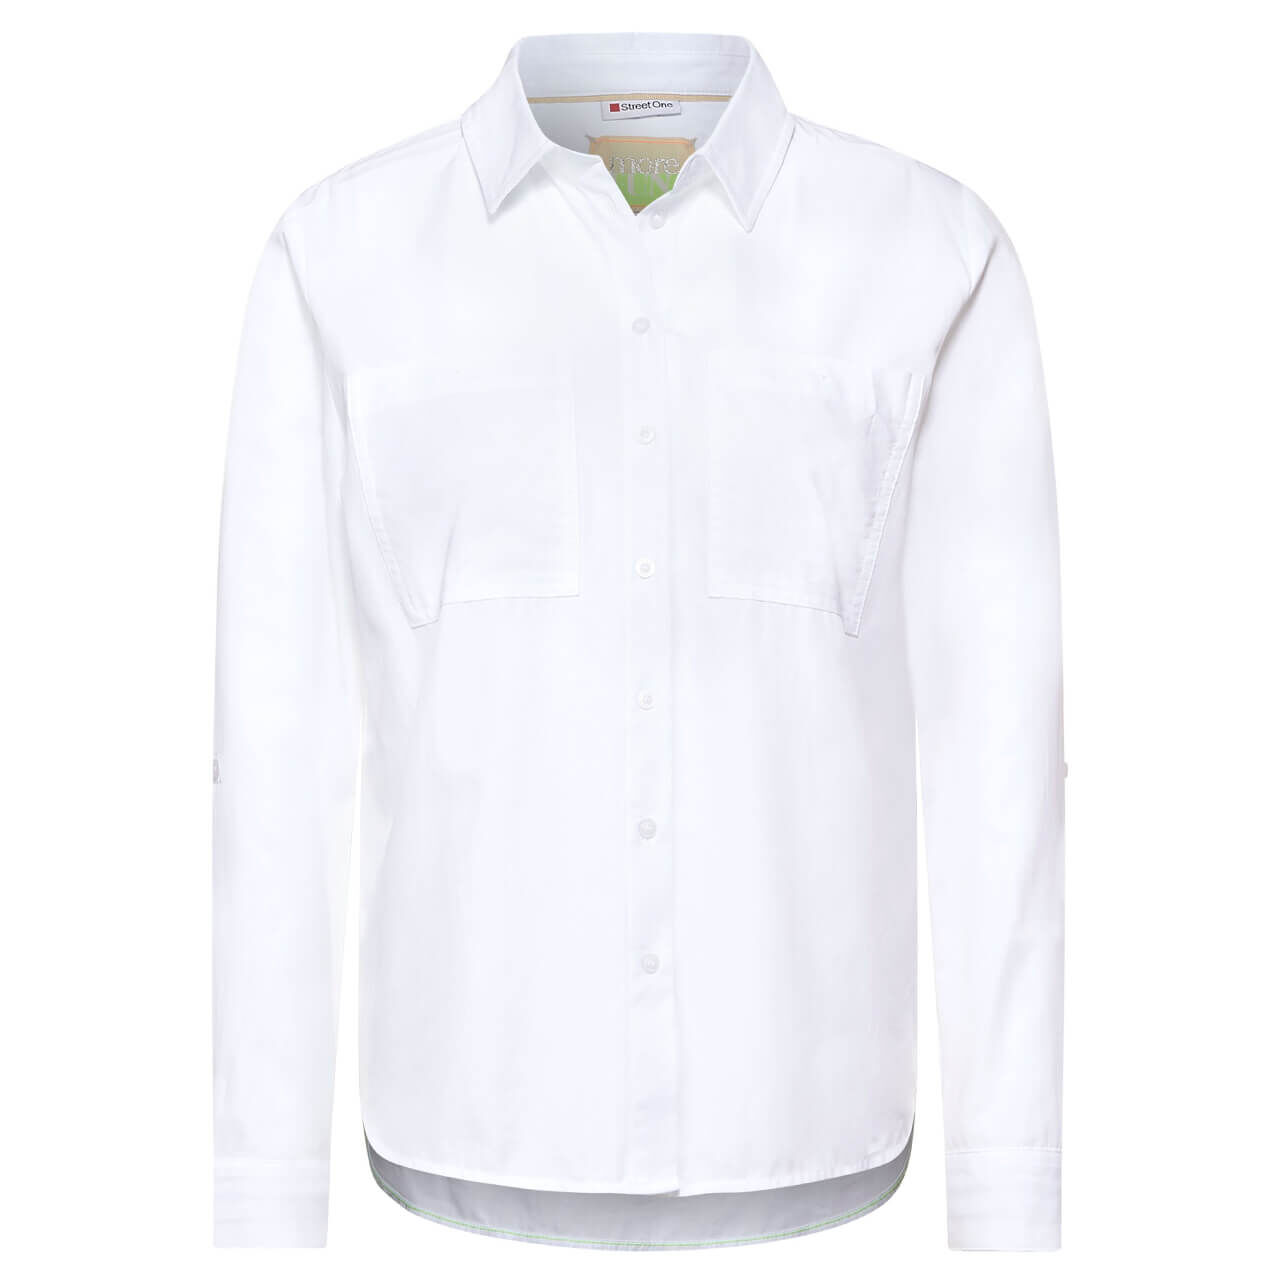 Street One Cotton Bluse für Damen in Weiß, FarbNr.: 10000